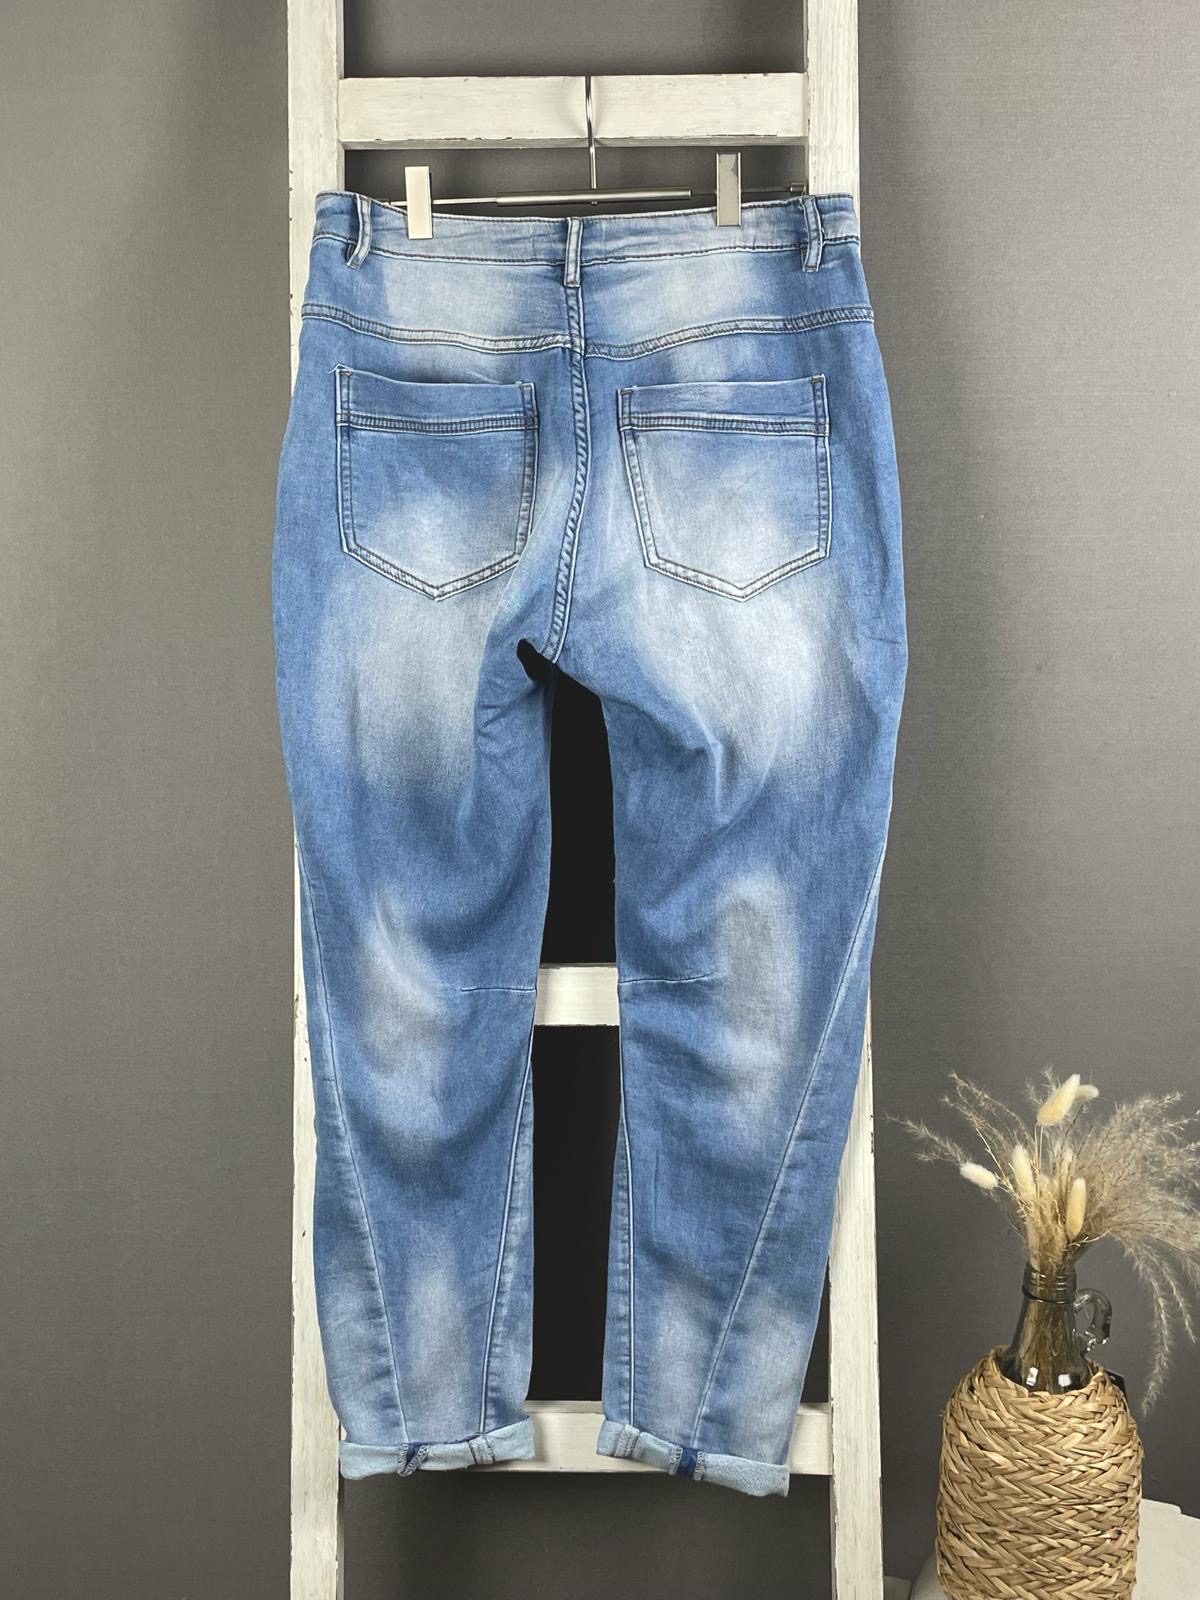 Jeans mit heller Waschung und hängenden Schritt